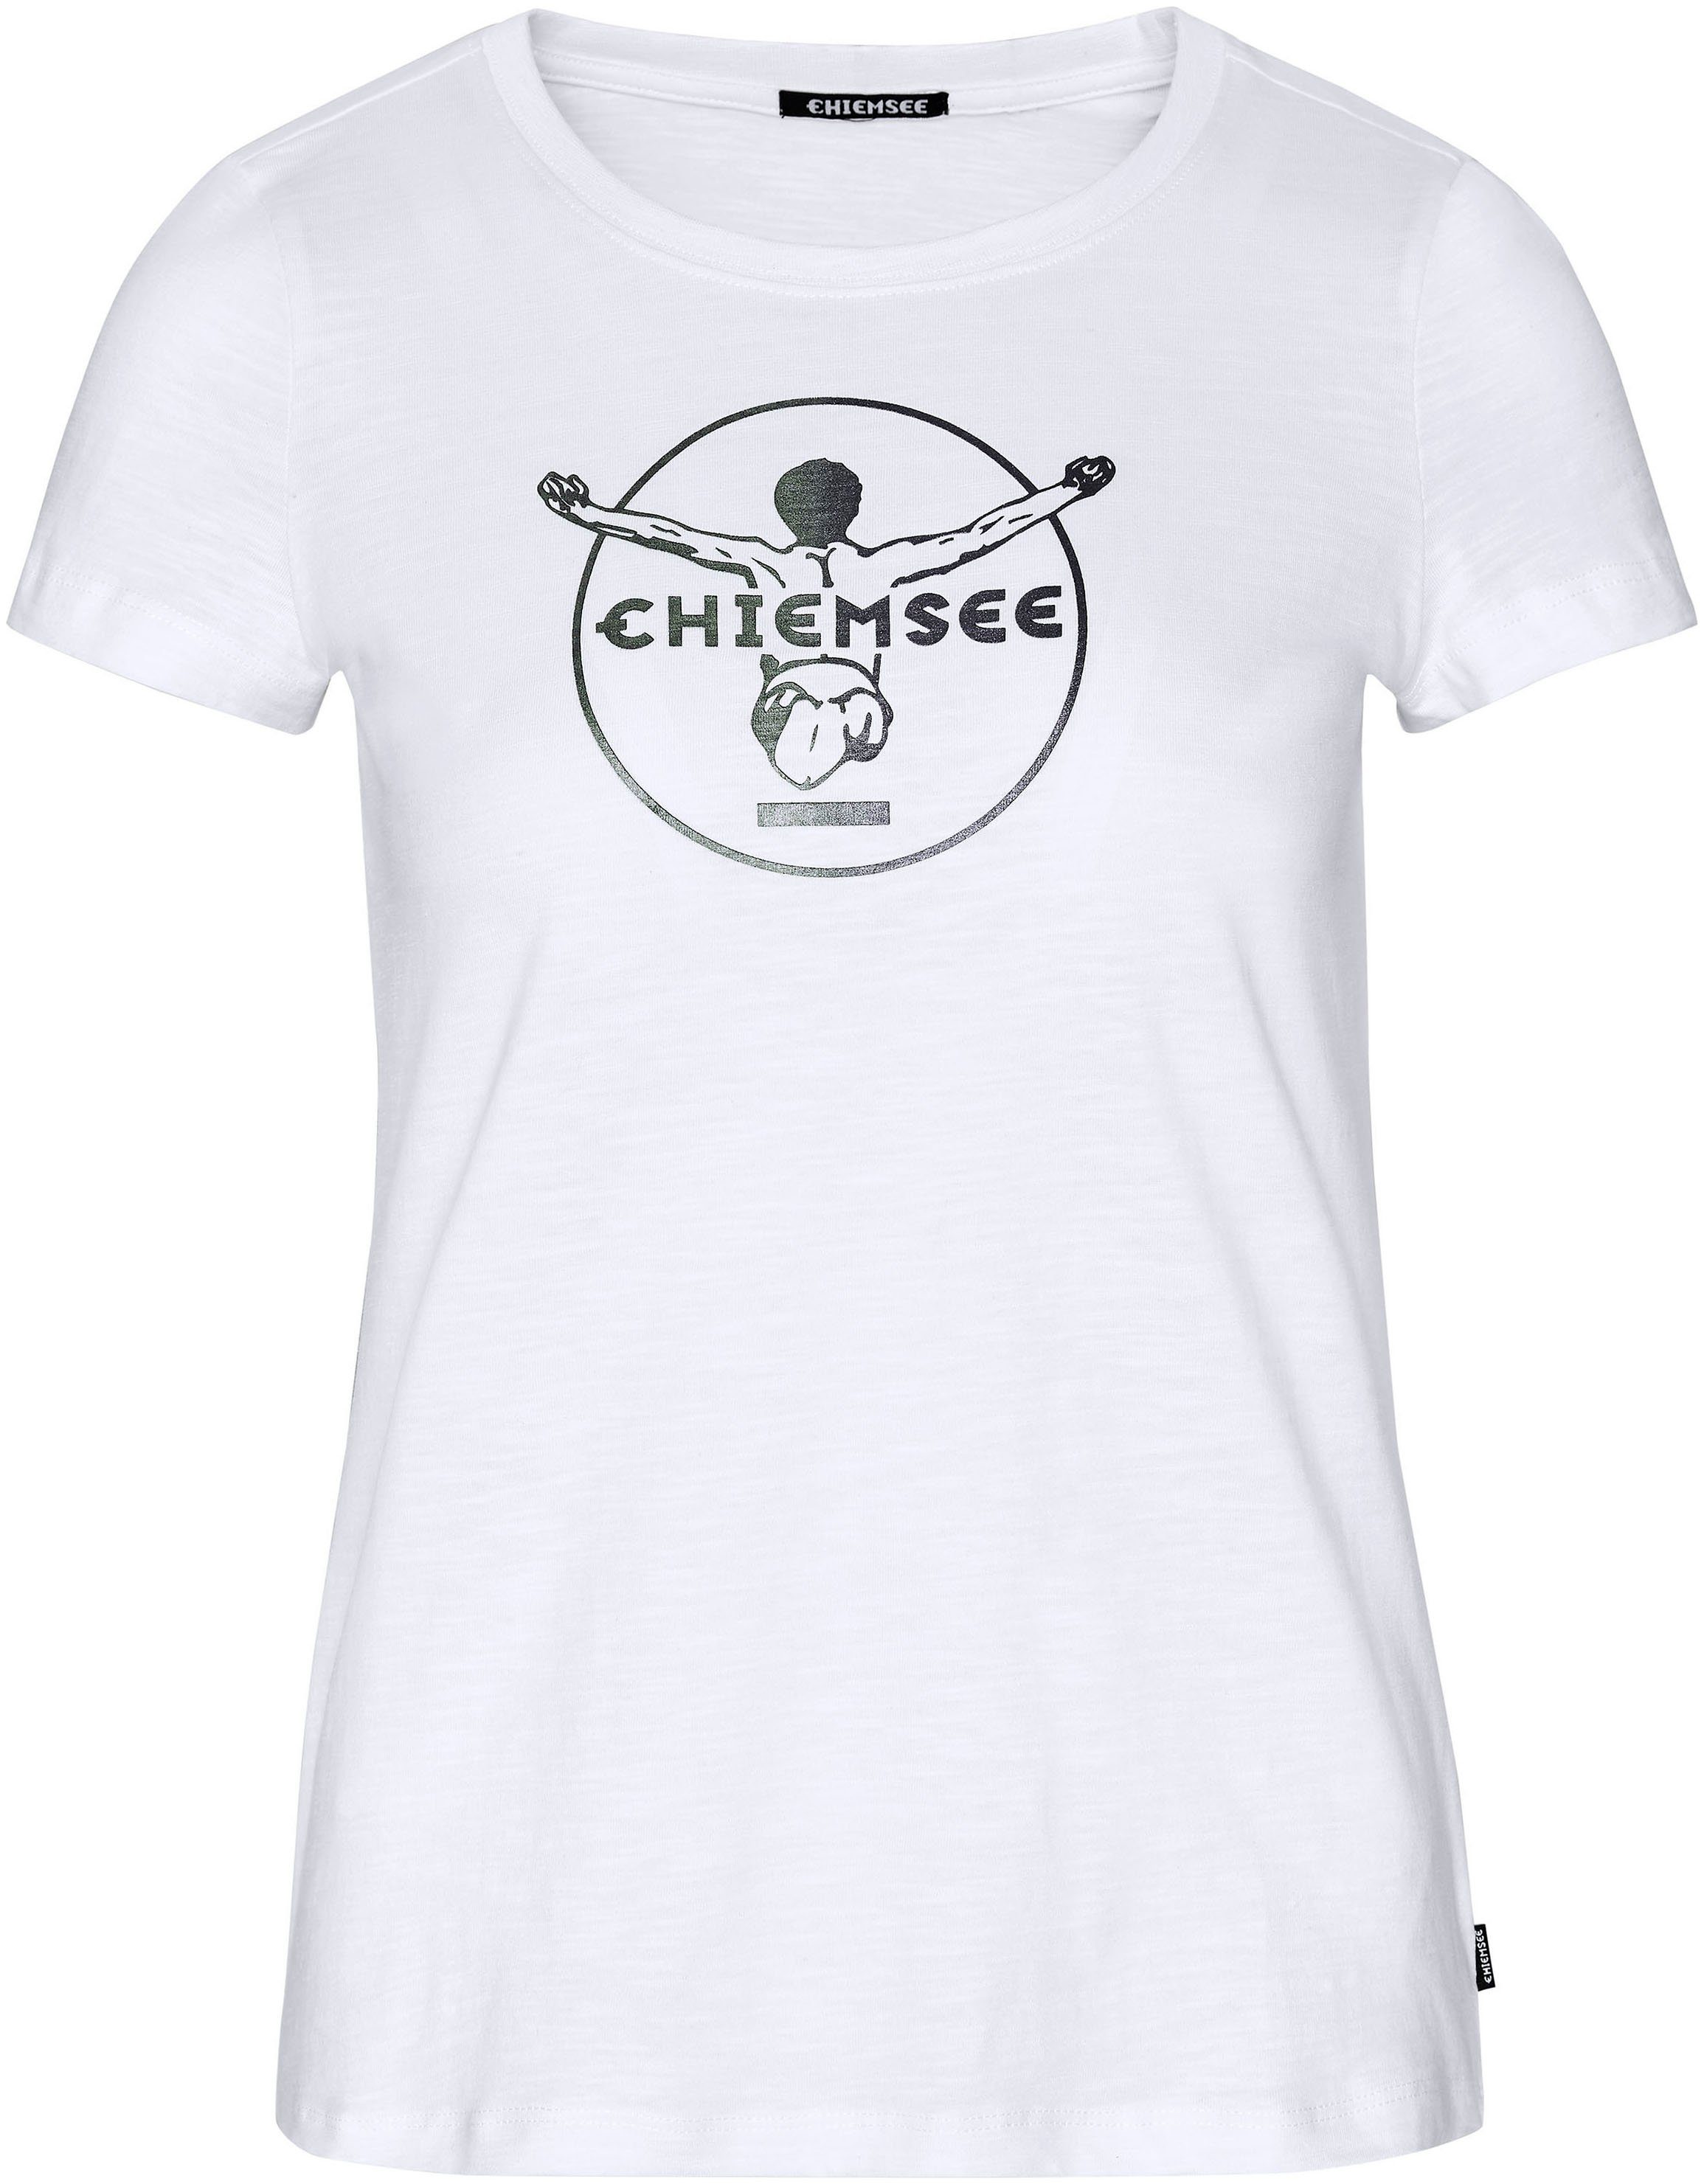 Bright Chiemsee White T-Shirt